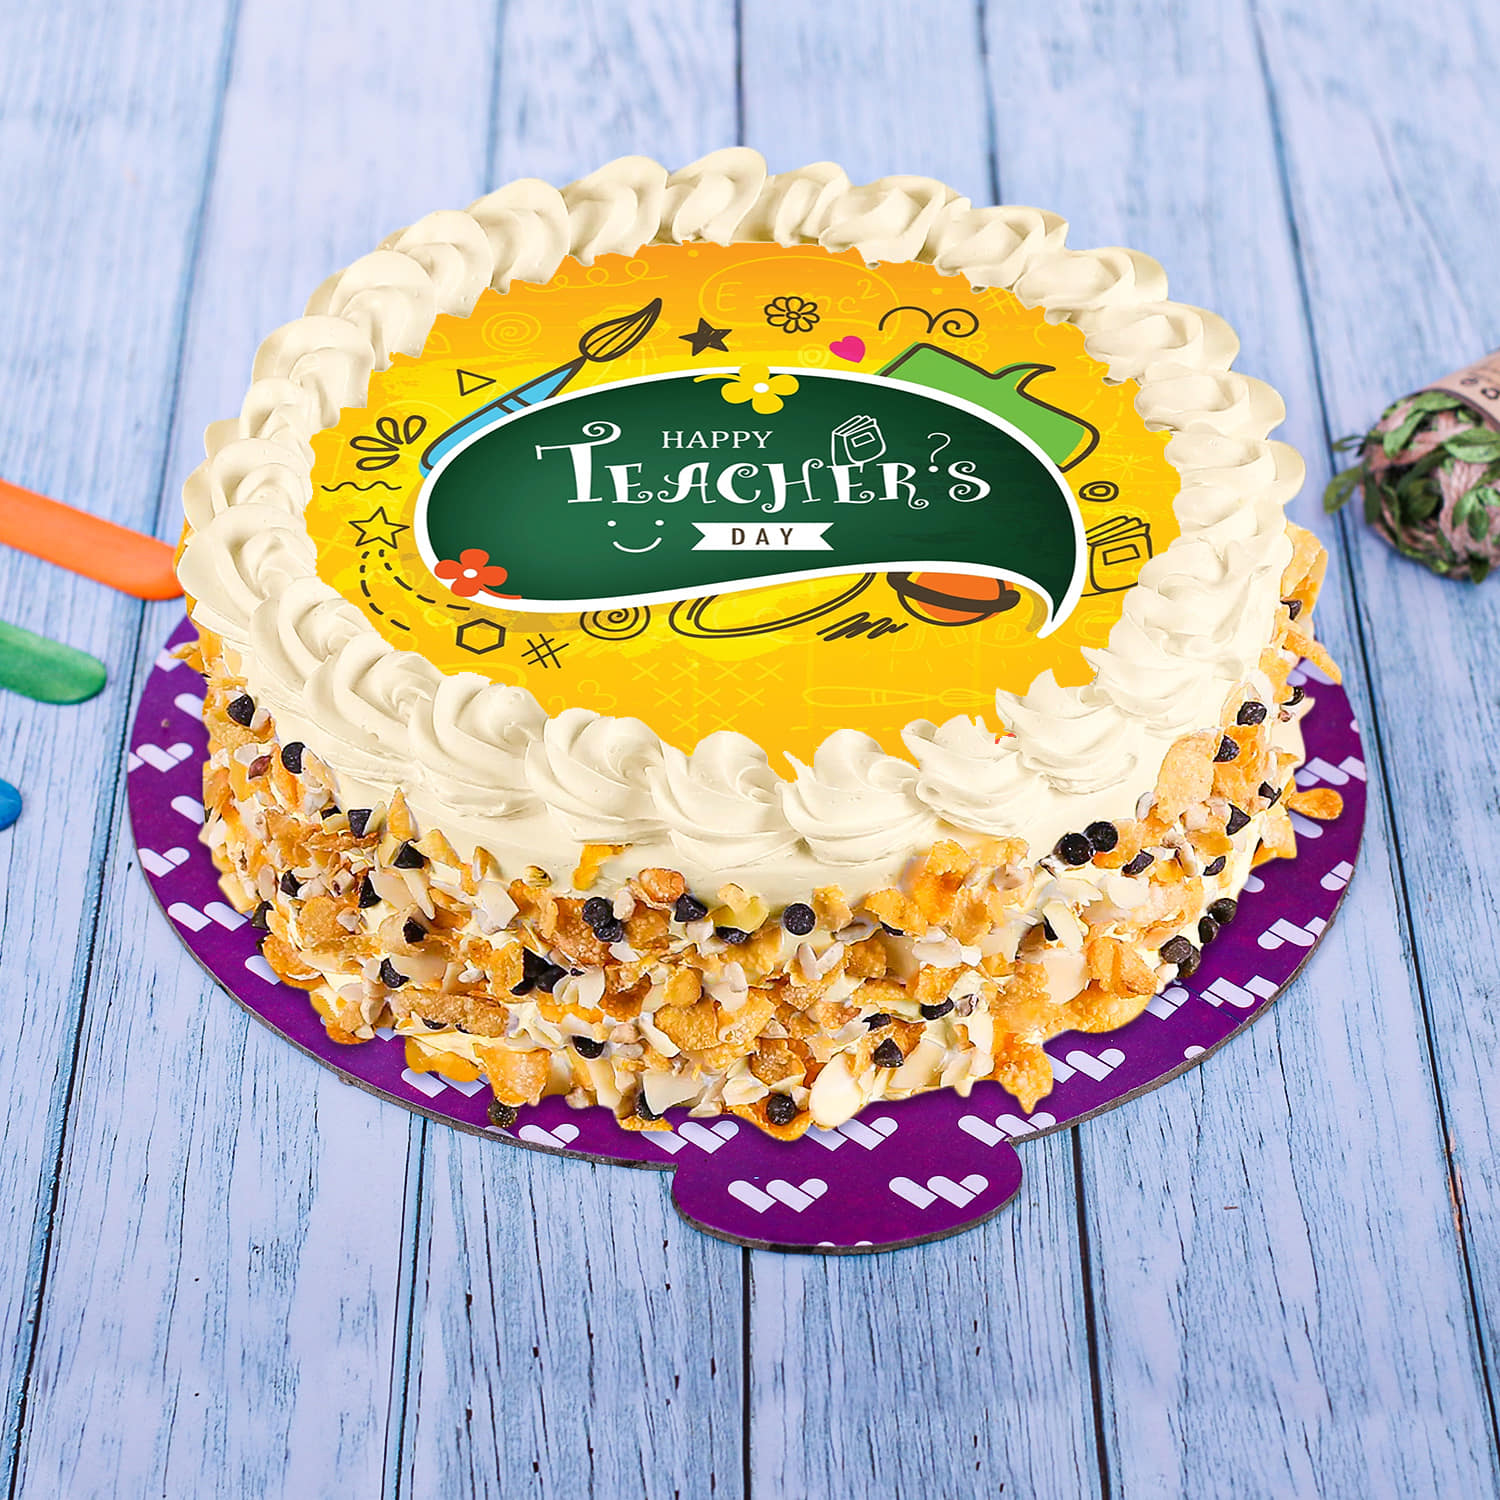 Thank you Teacher Cakes 2015 – Beautiful Birthday Cakes